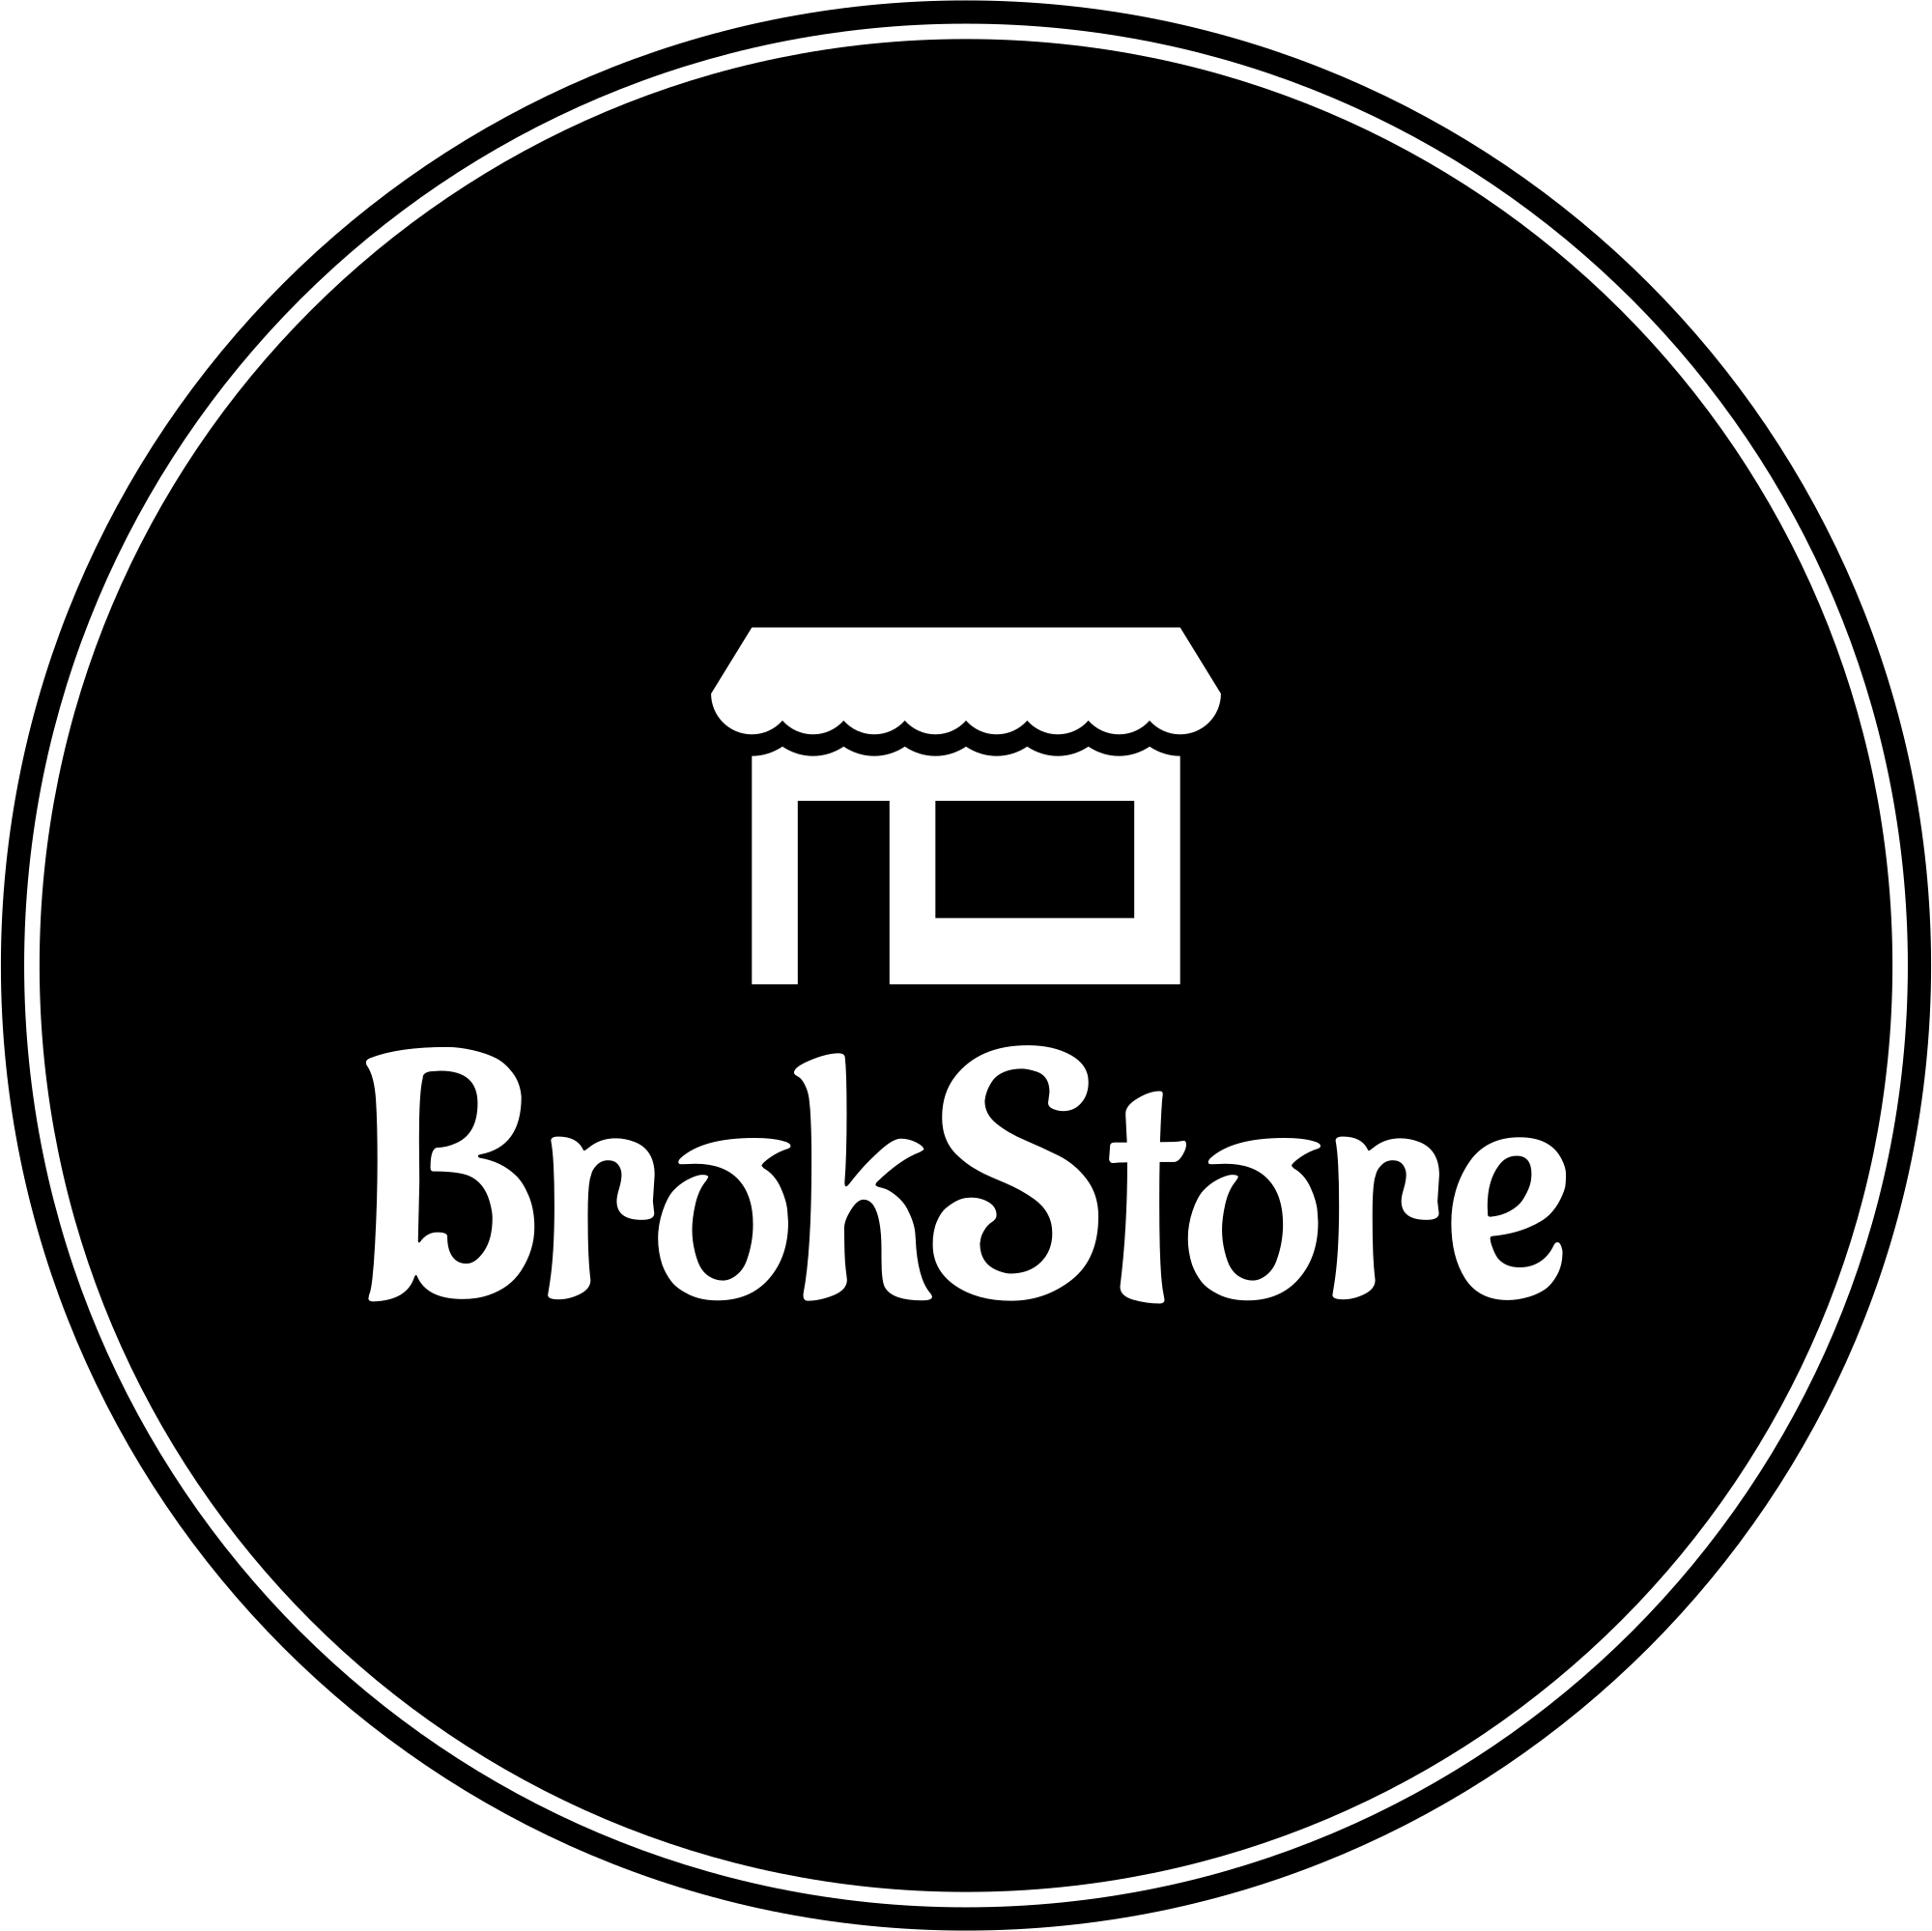 BrokStore